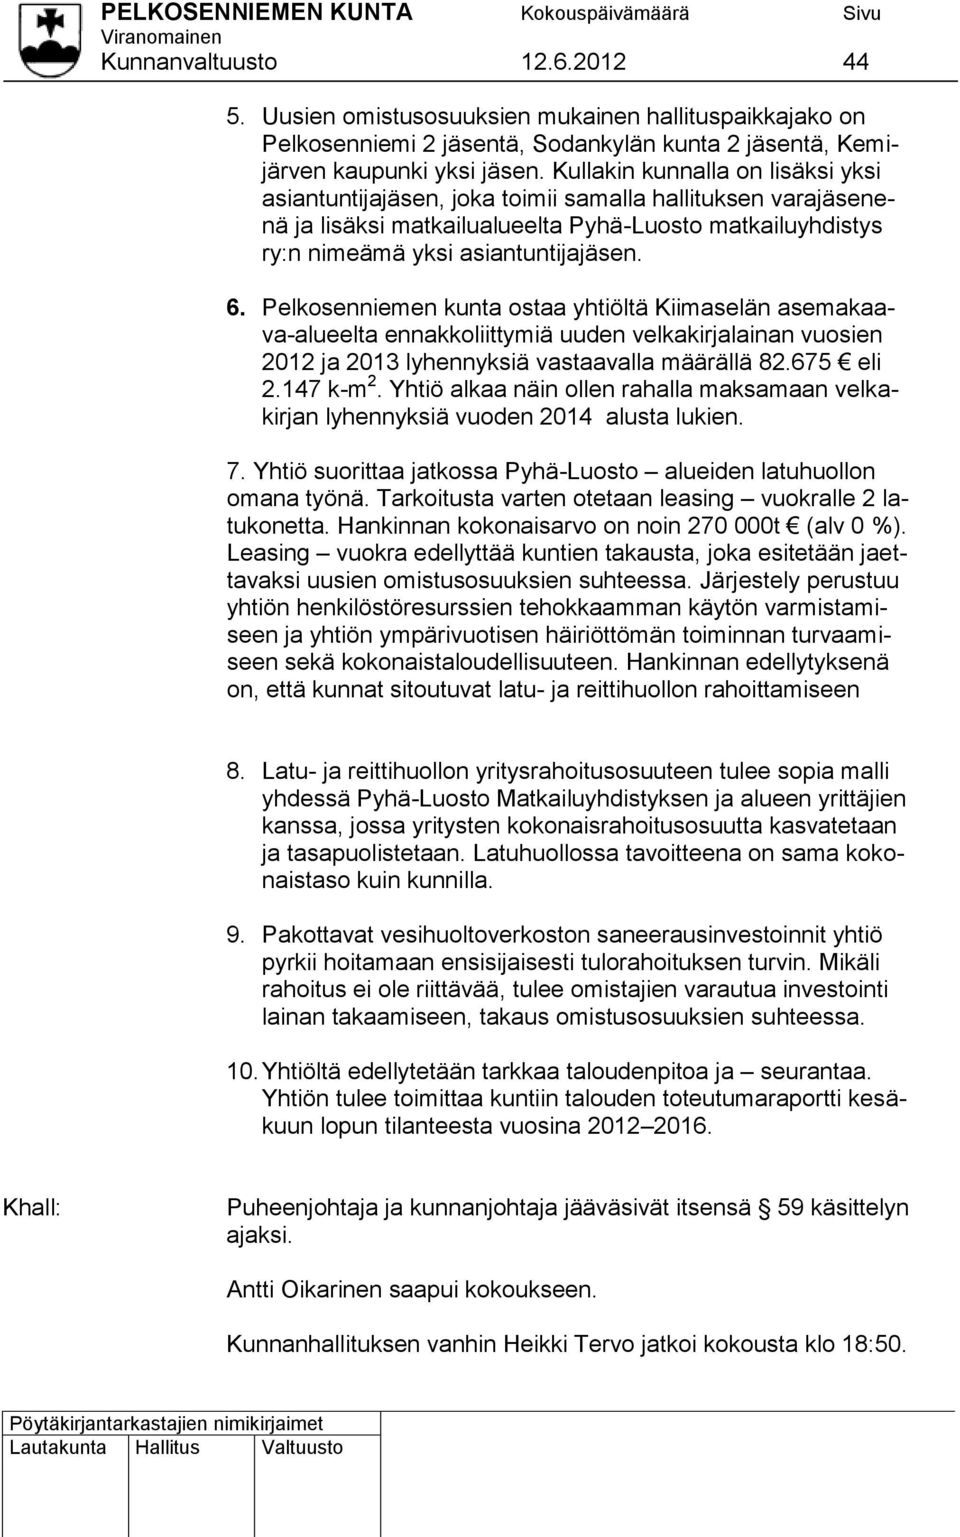 Pelkosenniemen kunta ostaa yhtiöltä Kiimaselän asemakaava-alueelta ennakkoliittymiä uuden velkakirjalainan vuosien 2012 ja 2013 lyhennyksiä vastaavalla määrällä 82.675 eli 2.147 k-m 2.